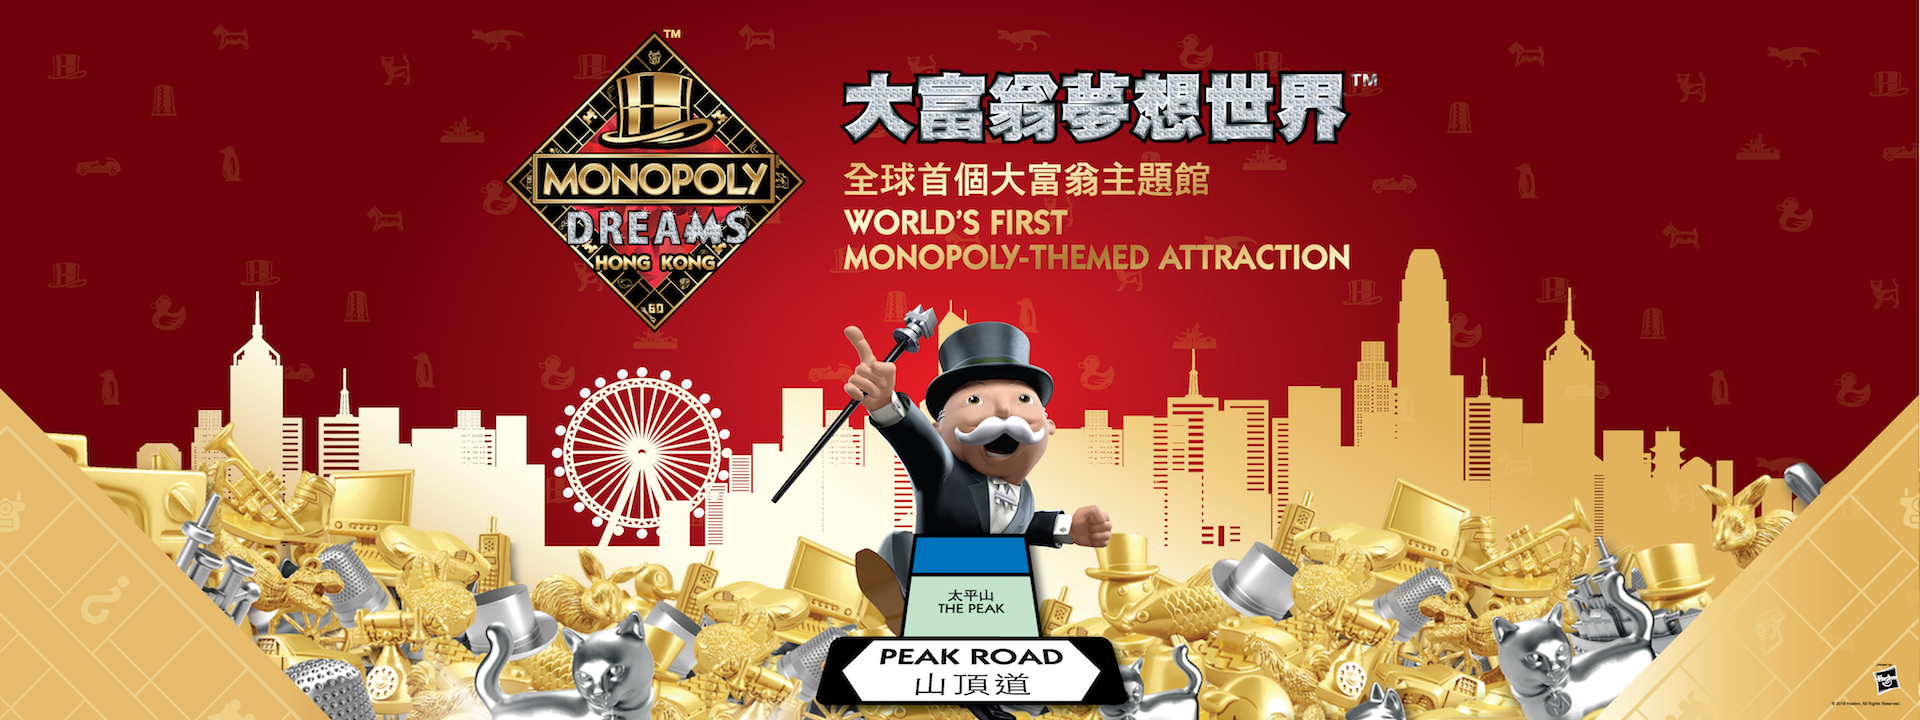 monopoly hongkong